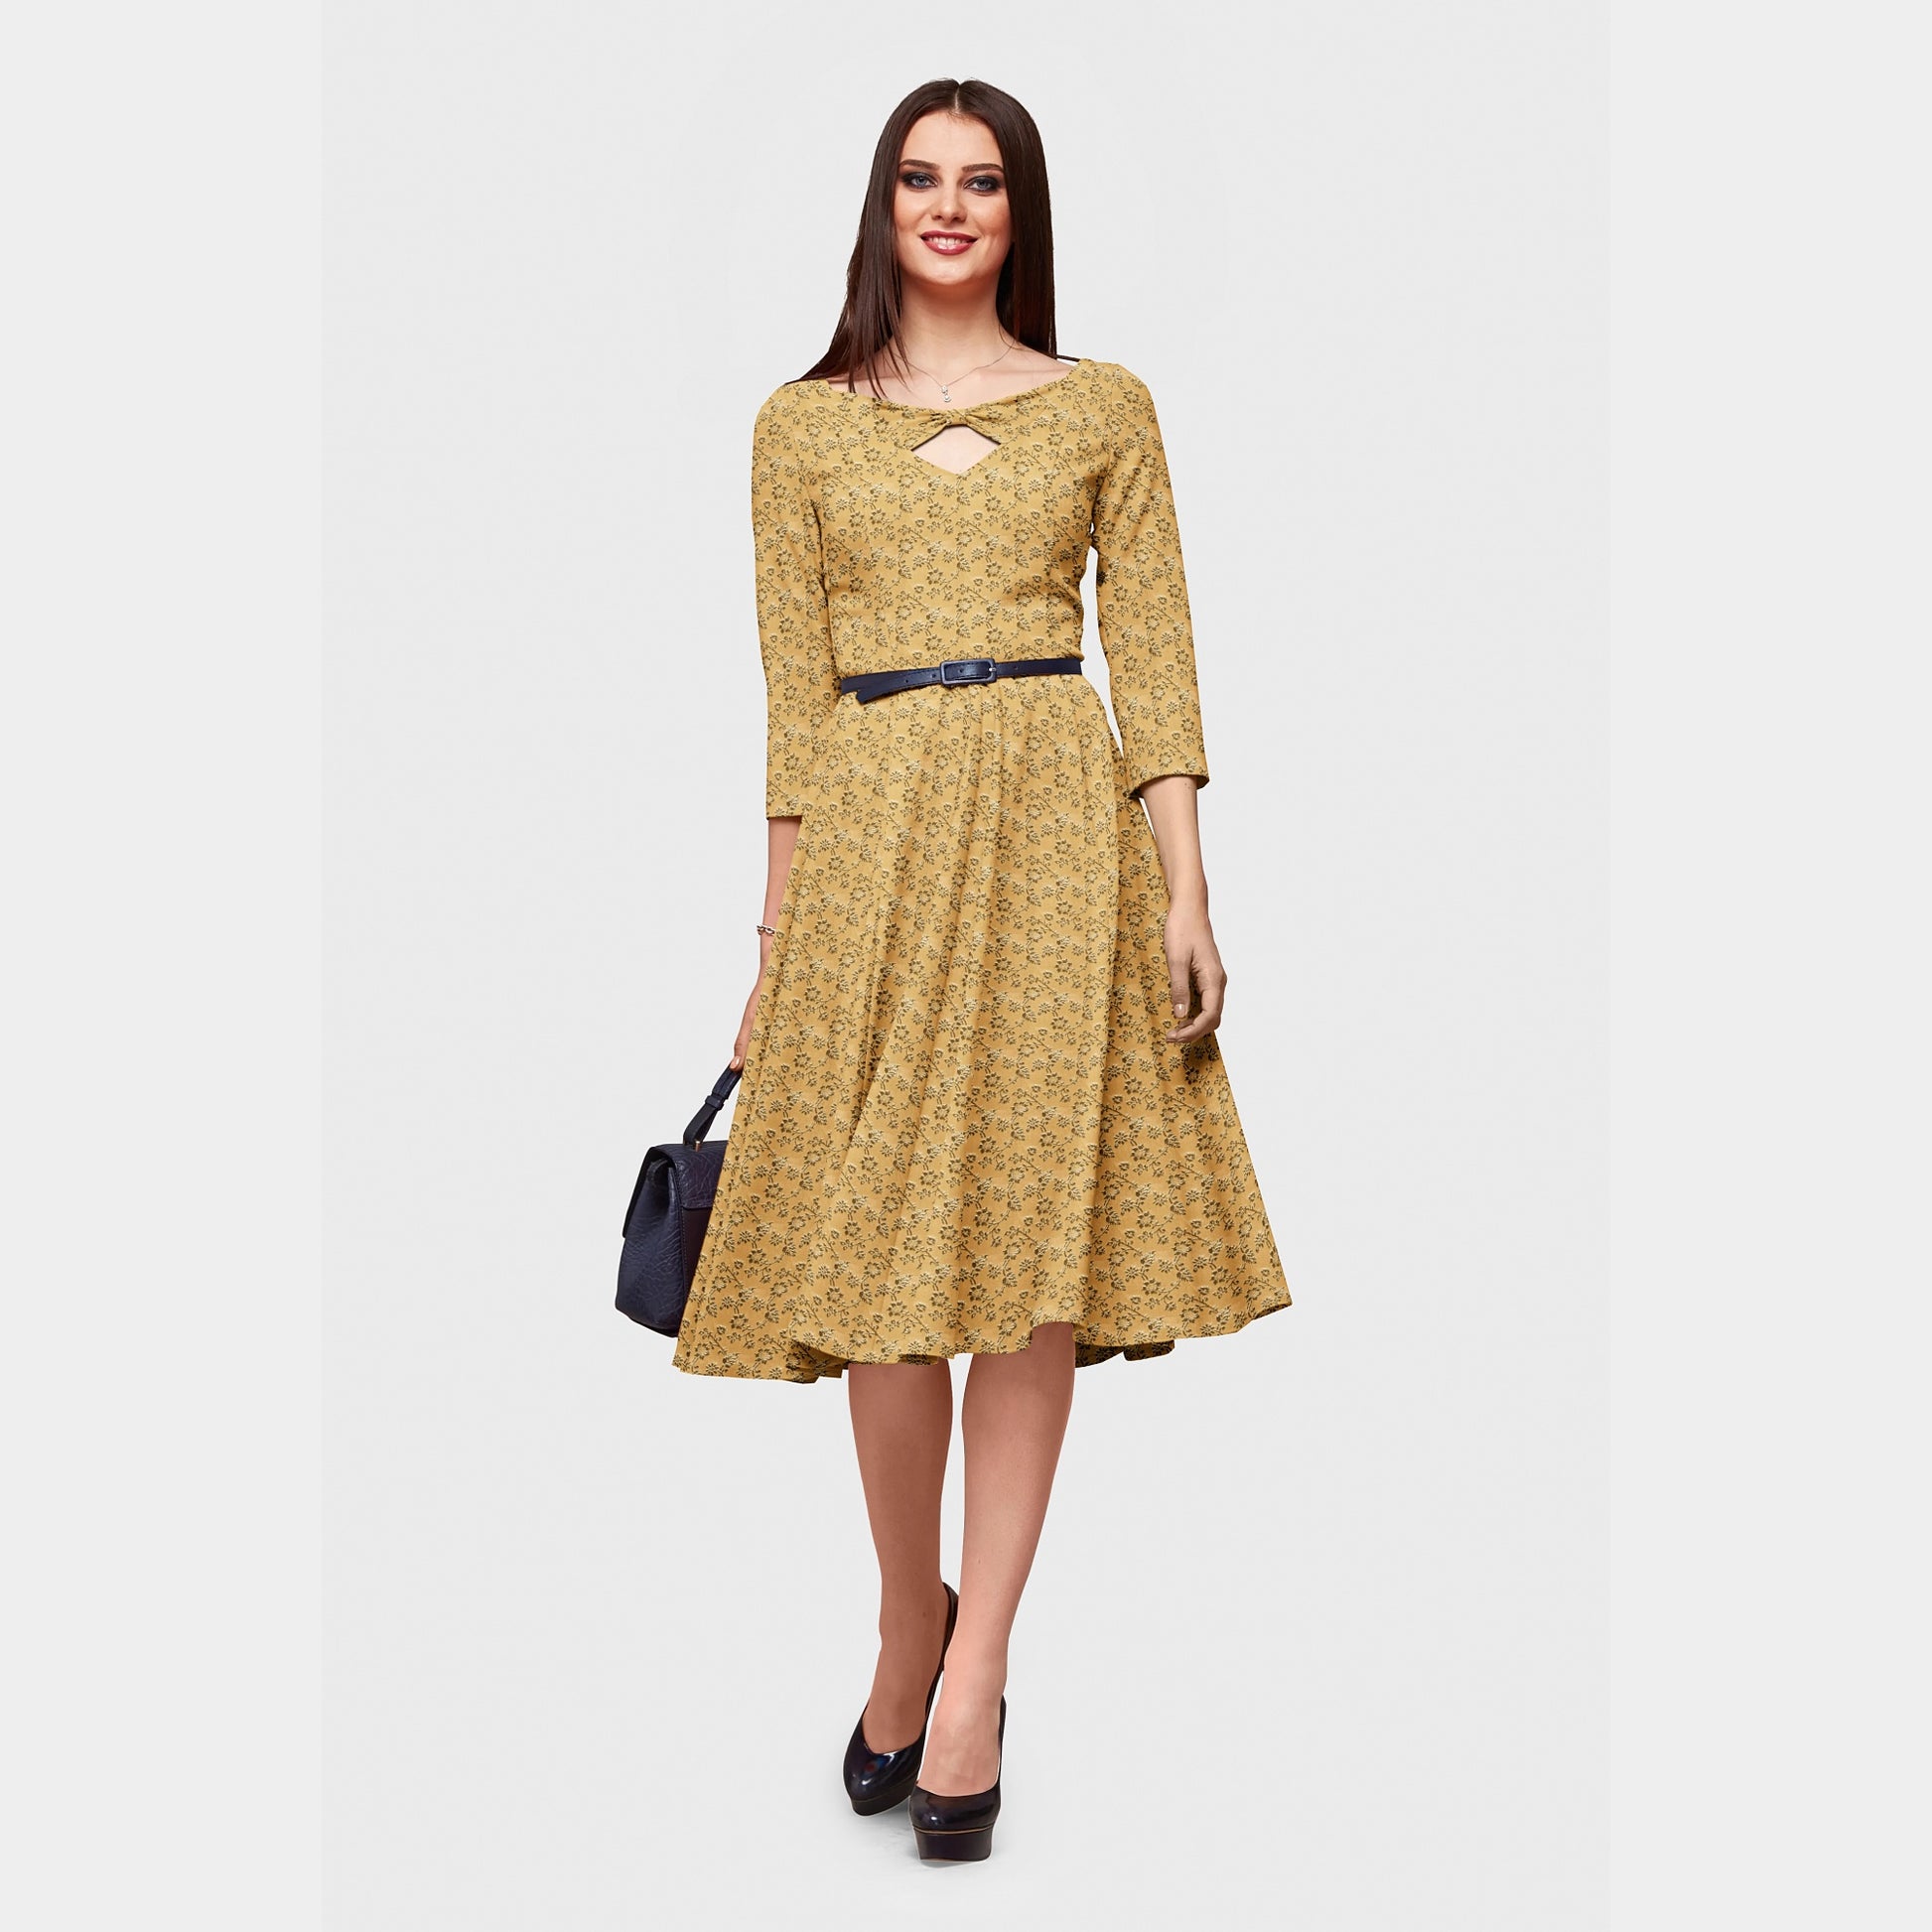 Golden Banarasi Brocade Fabric Dress